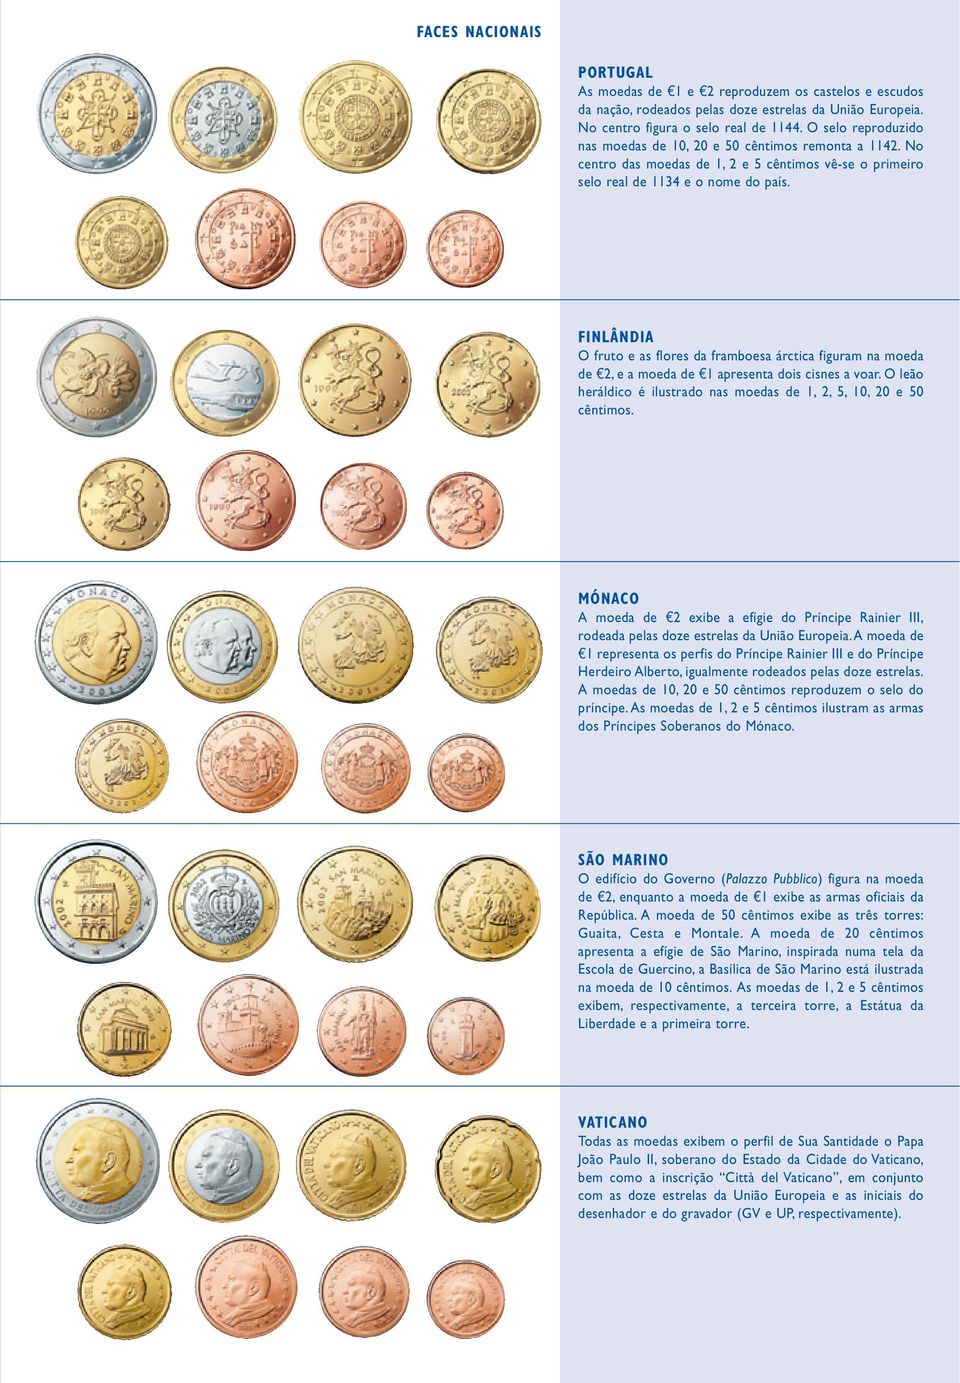 FINLÂNDIA O fruto e as flores da framboesa árctica figuram na moeda de e2, e a moeda de e1 apresenta dois cisnes a voar. O leão heráldico é ilustrado nas moedas de 1, 2, 5, 10, 20 e 50 cêntimos.